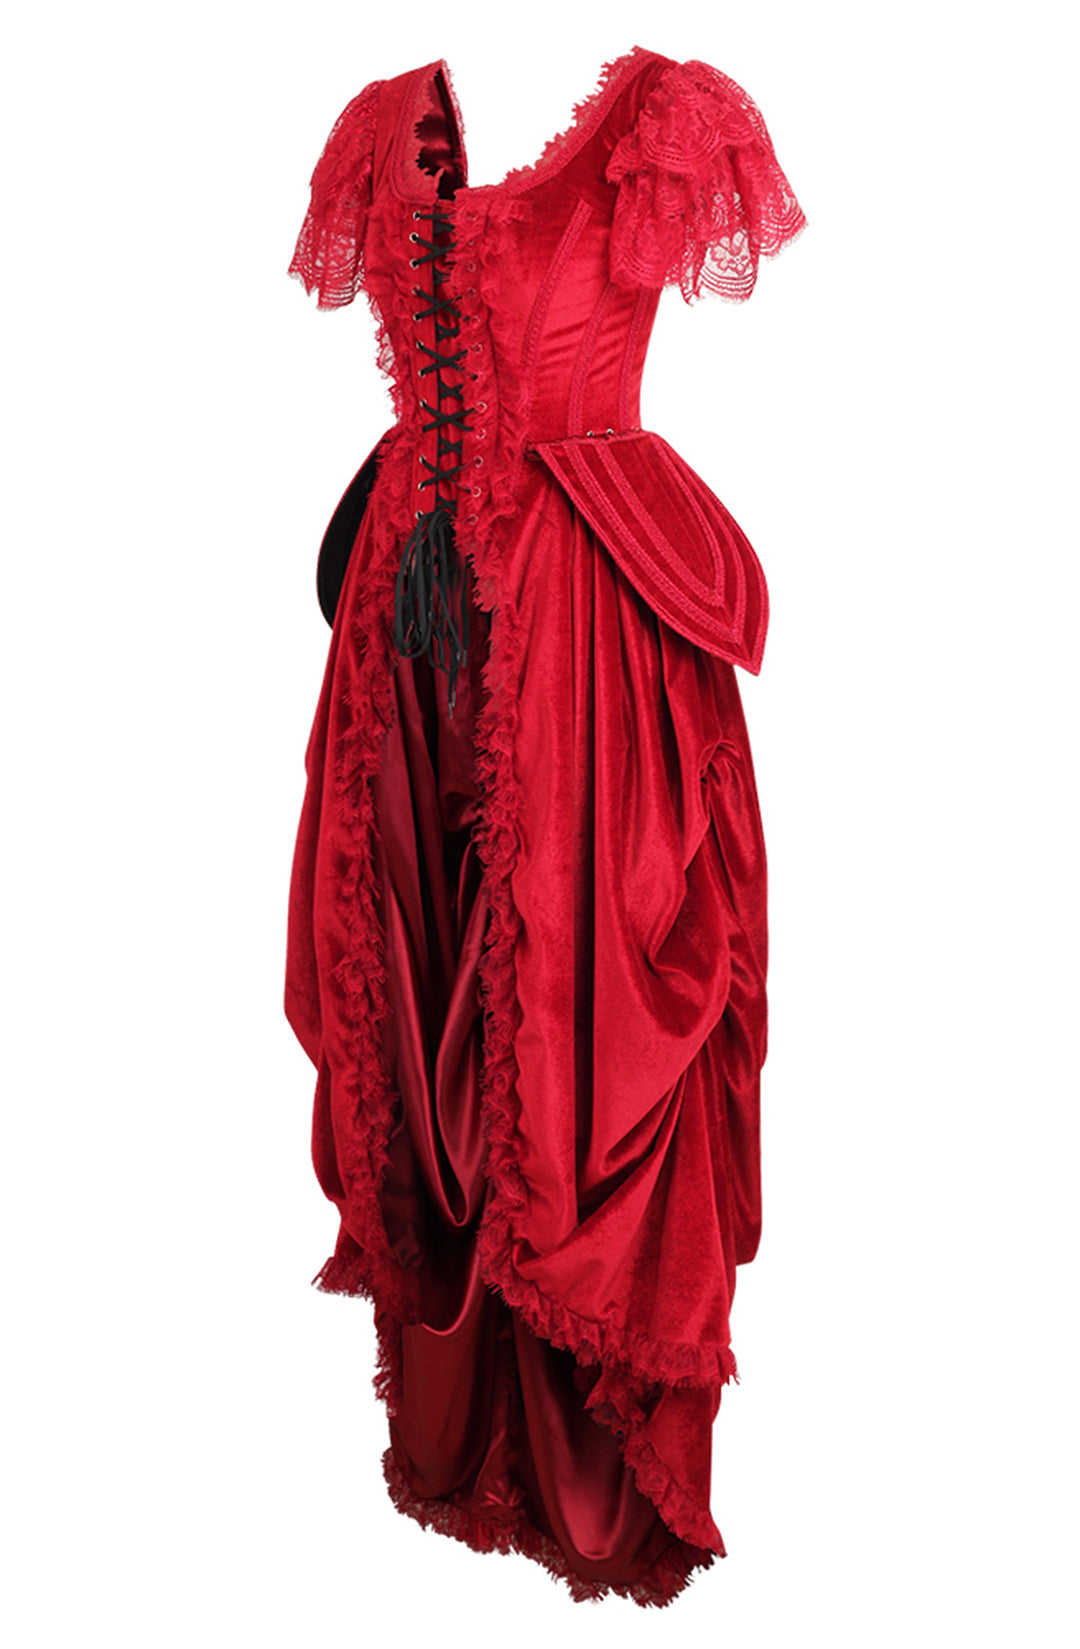 Red Corset Dress in Scarlet Red Velvet 2